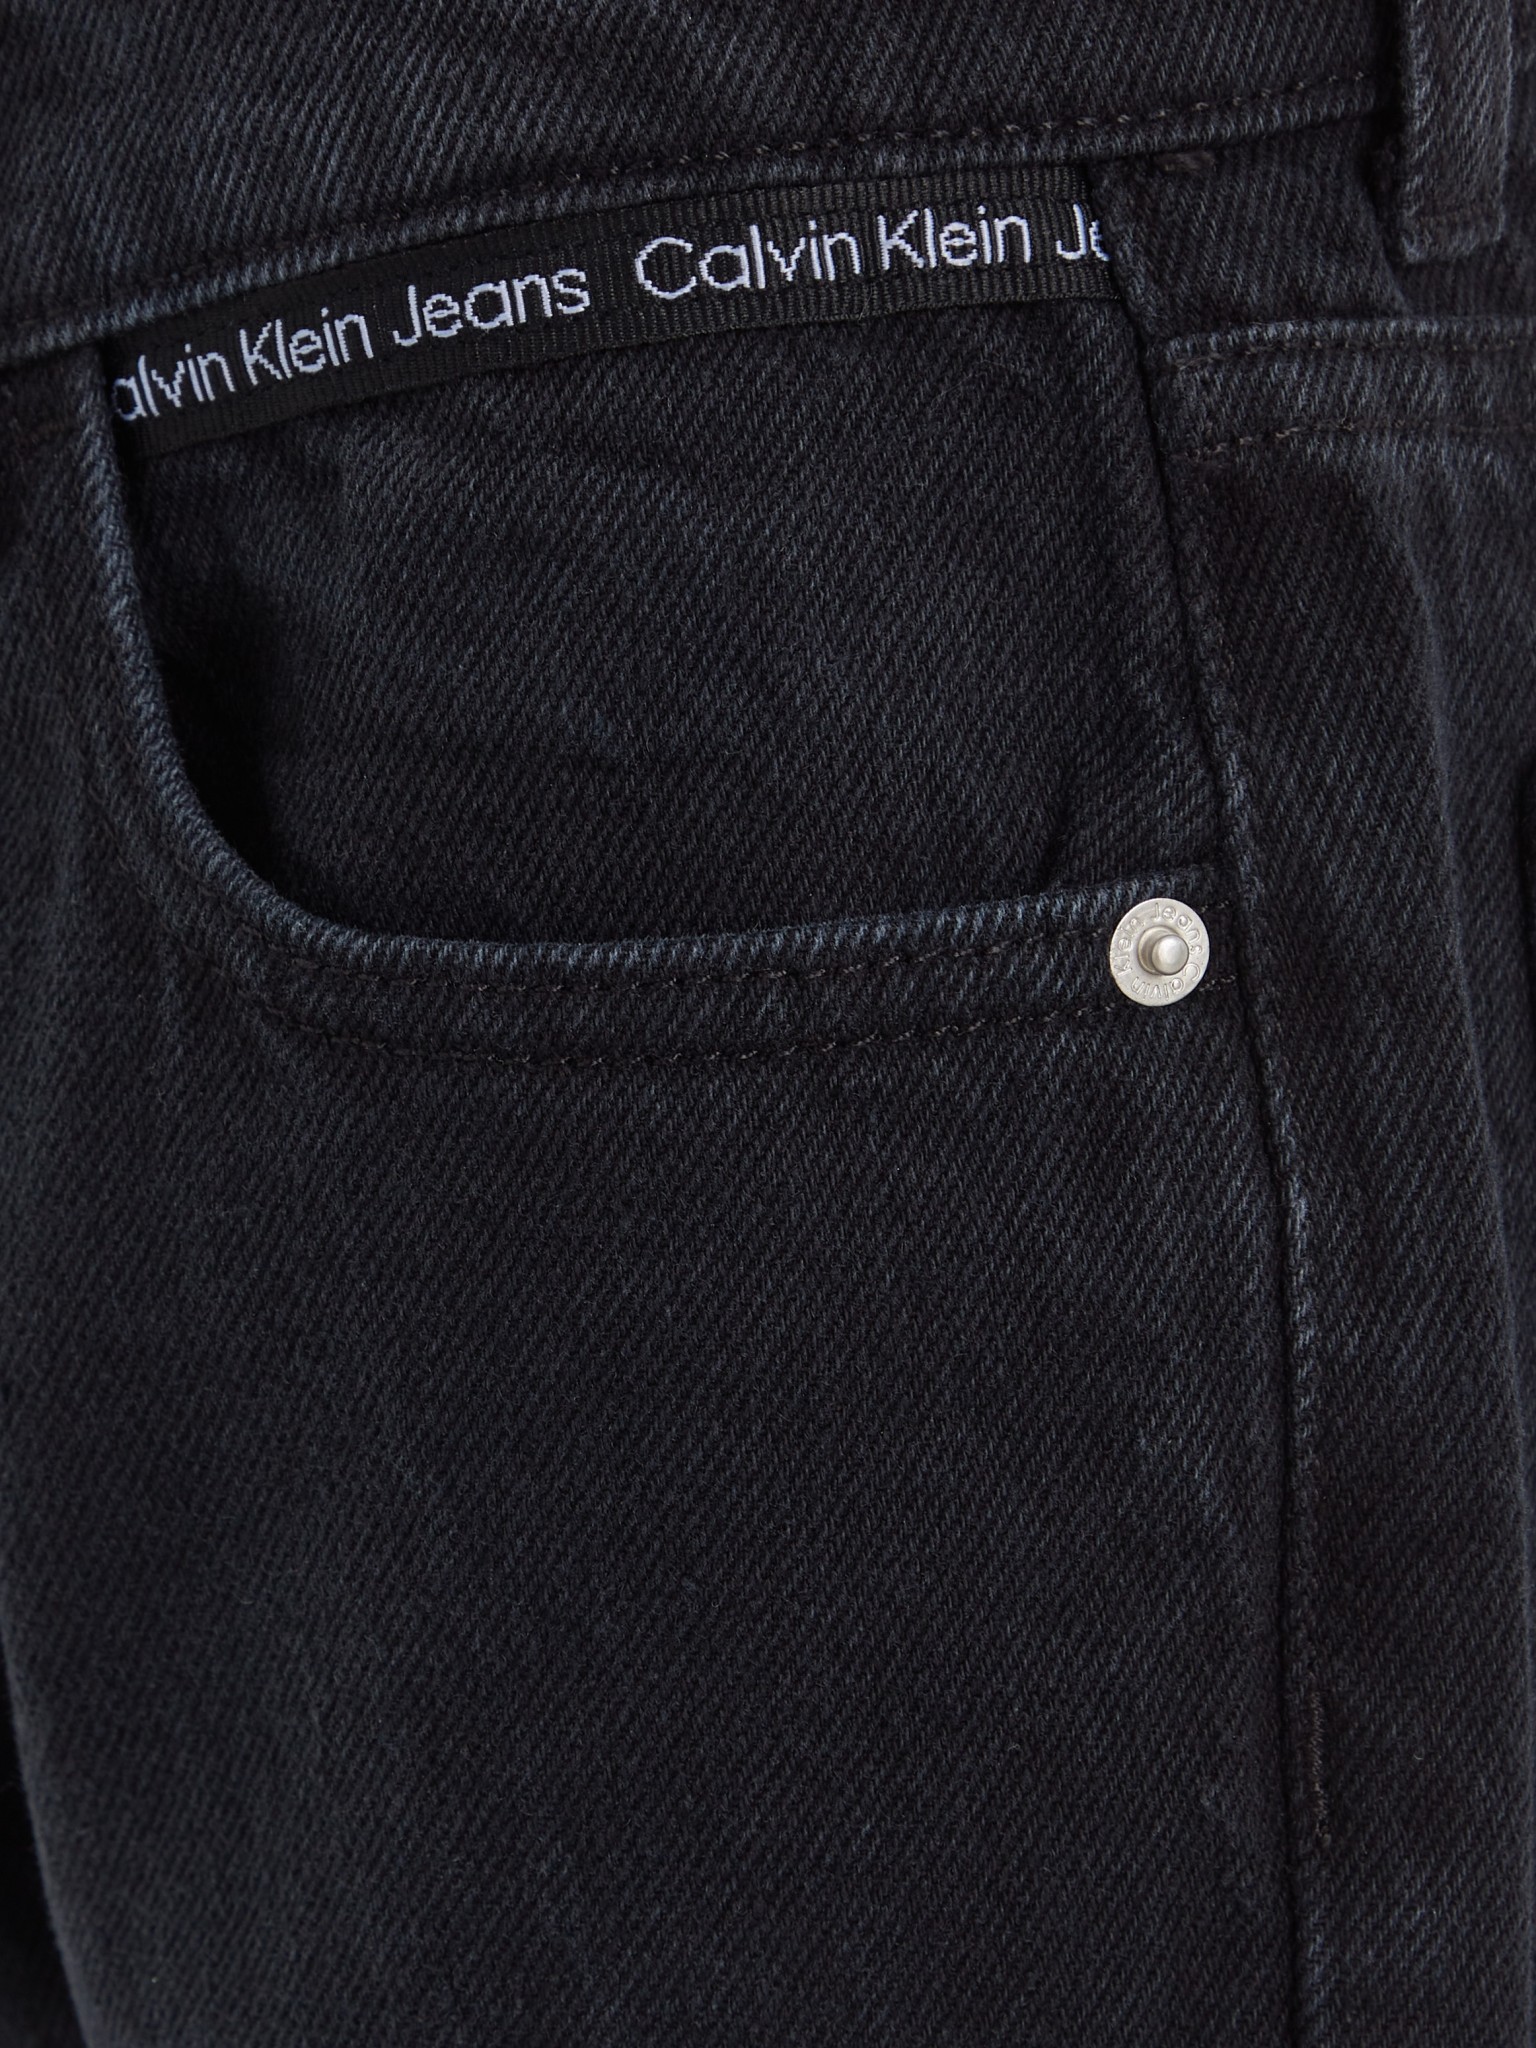 CALVIN KLEIN Dad Jeans 10704880 kaufen | WÖHRL